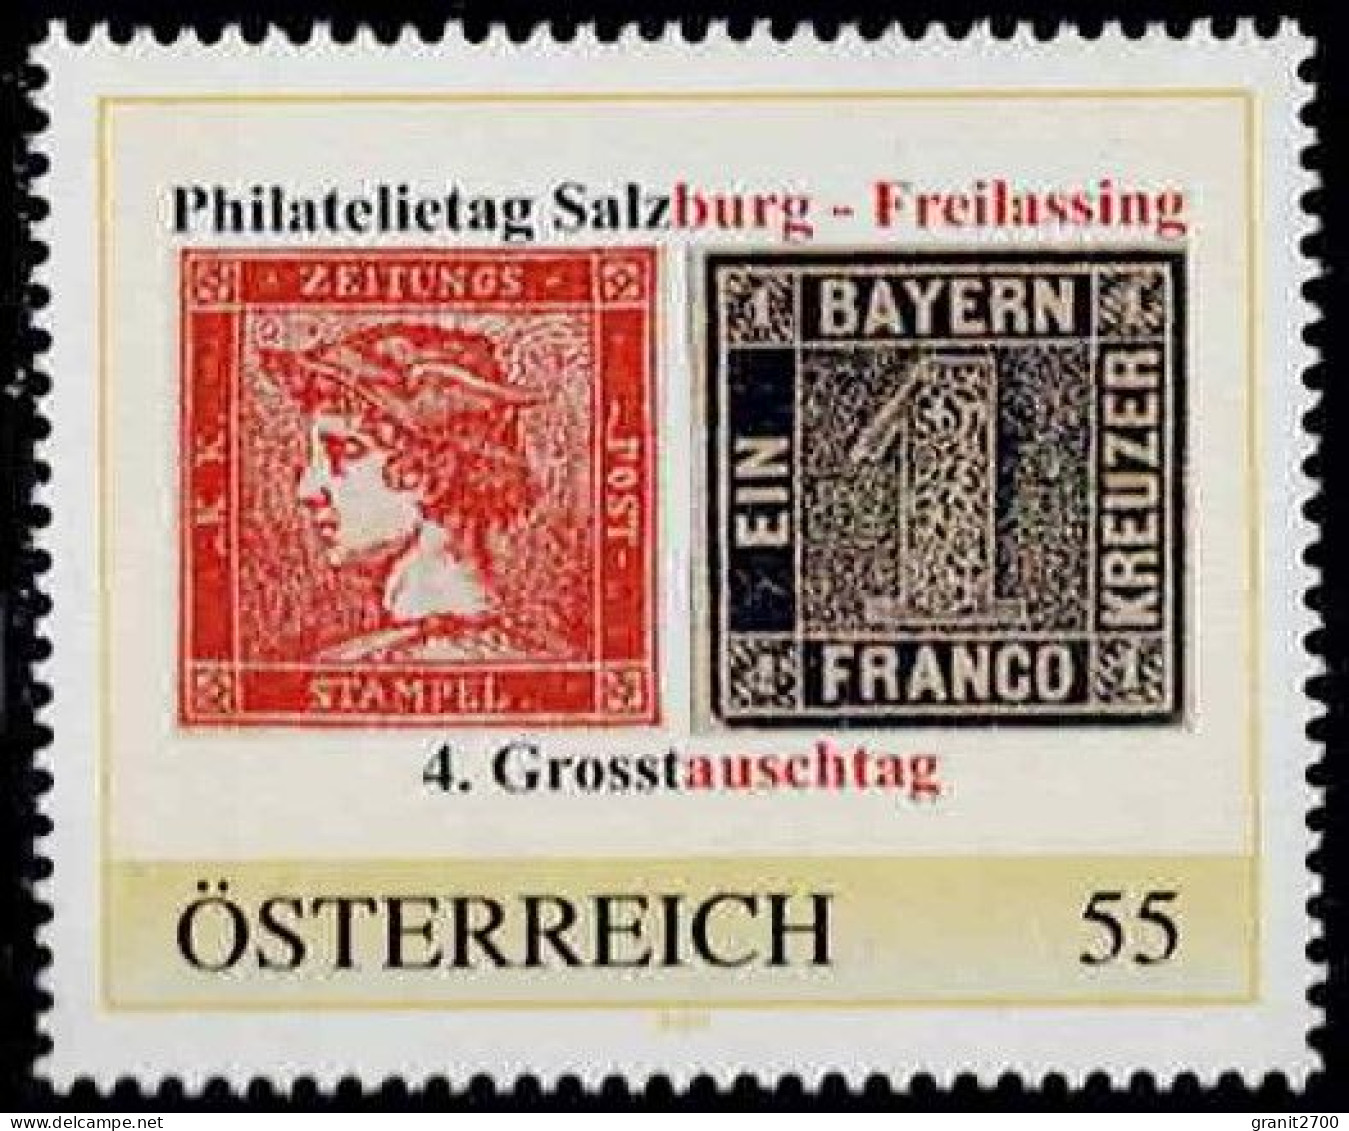 PM Philatelietag Salzburg - Freilassing  Ex Bogen Nr. 8024785 Vom 15.11.2009  Postfrisch - Personnalized Stamps